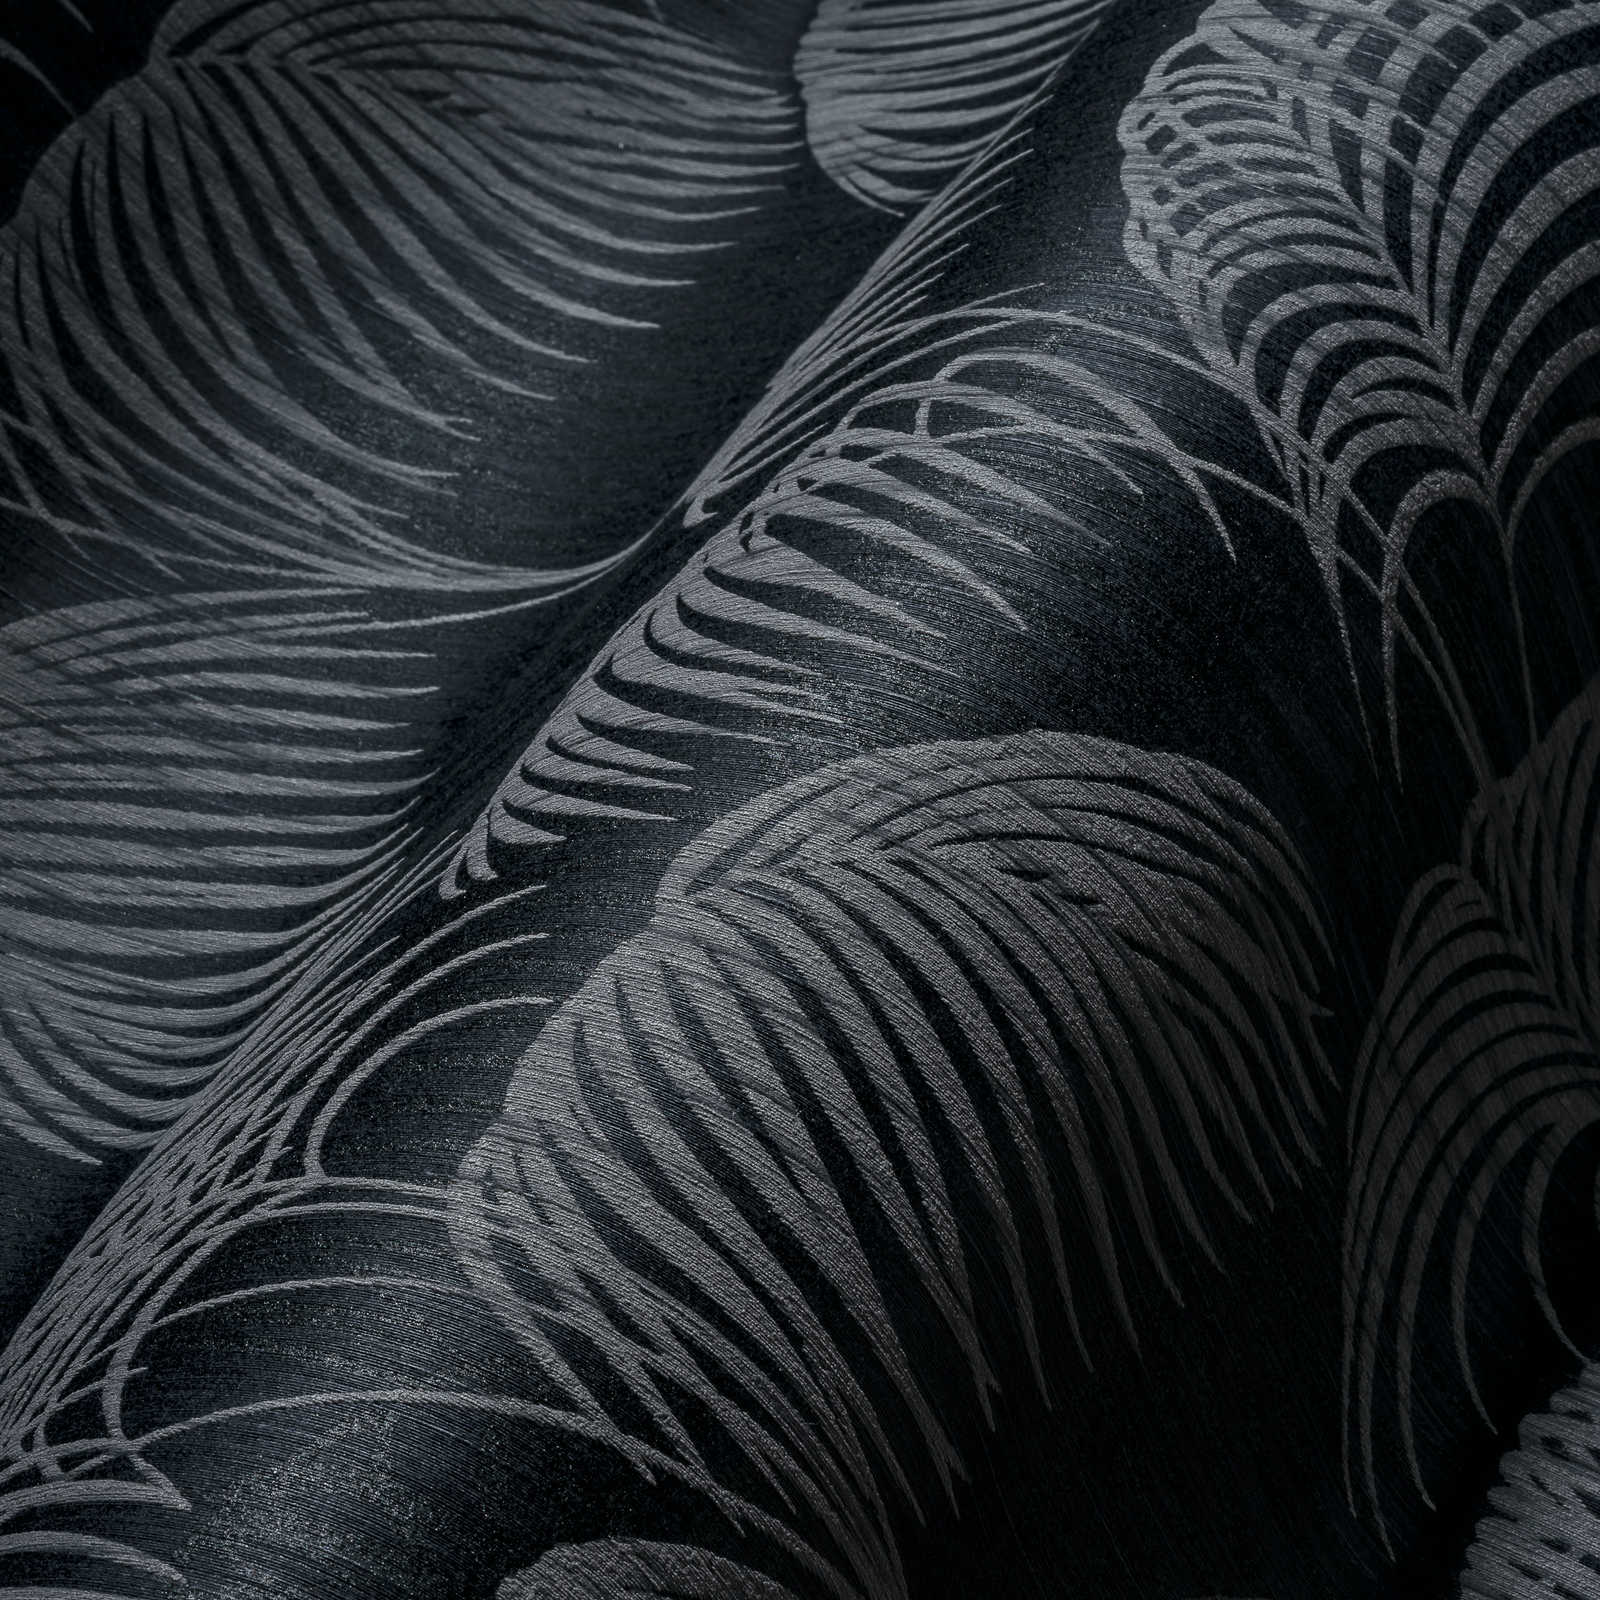             Papier peint Feuilles de palmier Motif naturel avec effet de profondeur - gris, noir
        